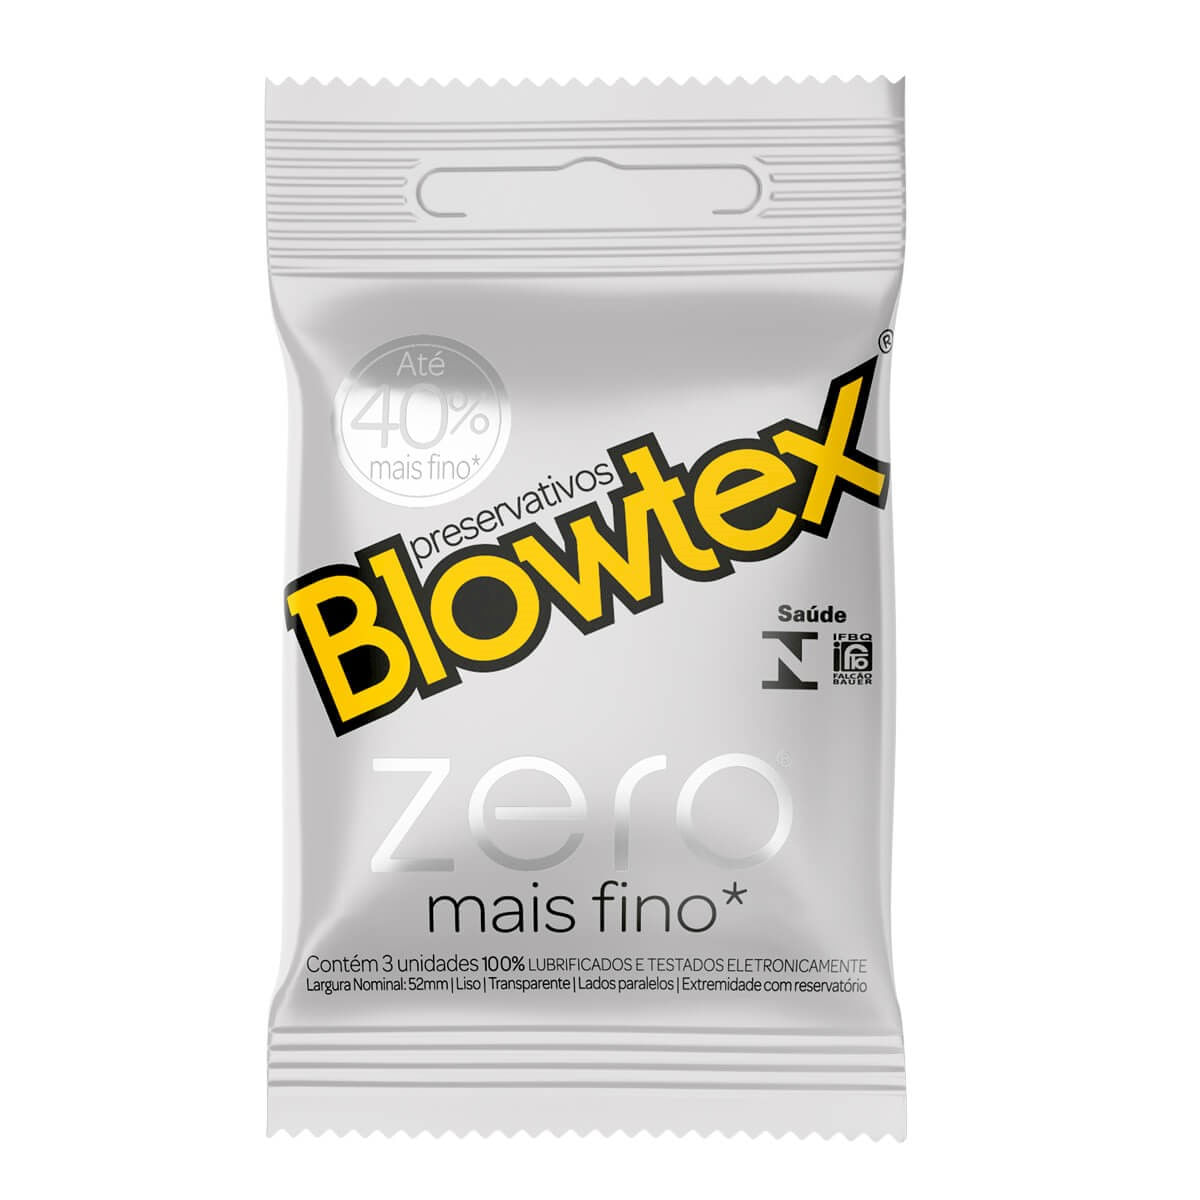 Preservativos Lubrificados Zero 40% Mais Fino com 3 unidades Blowtex